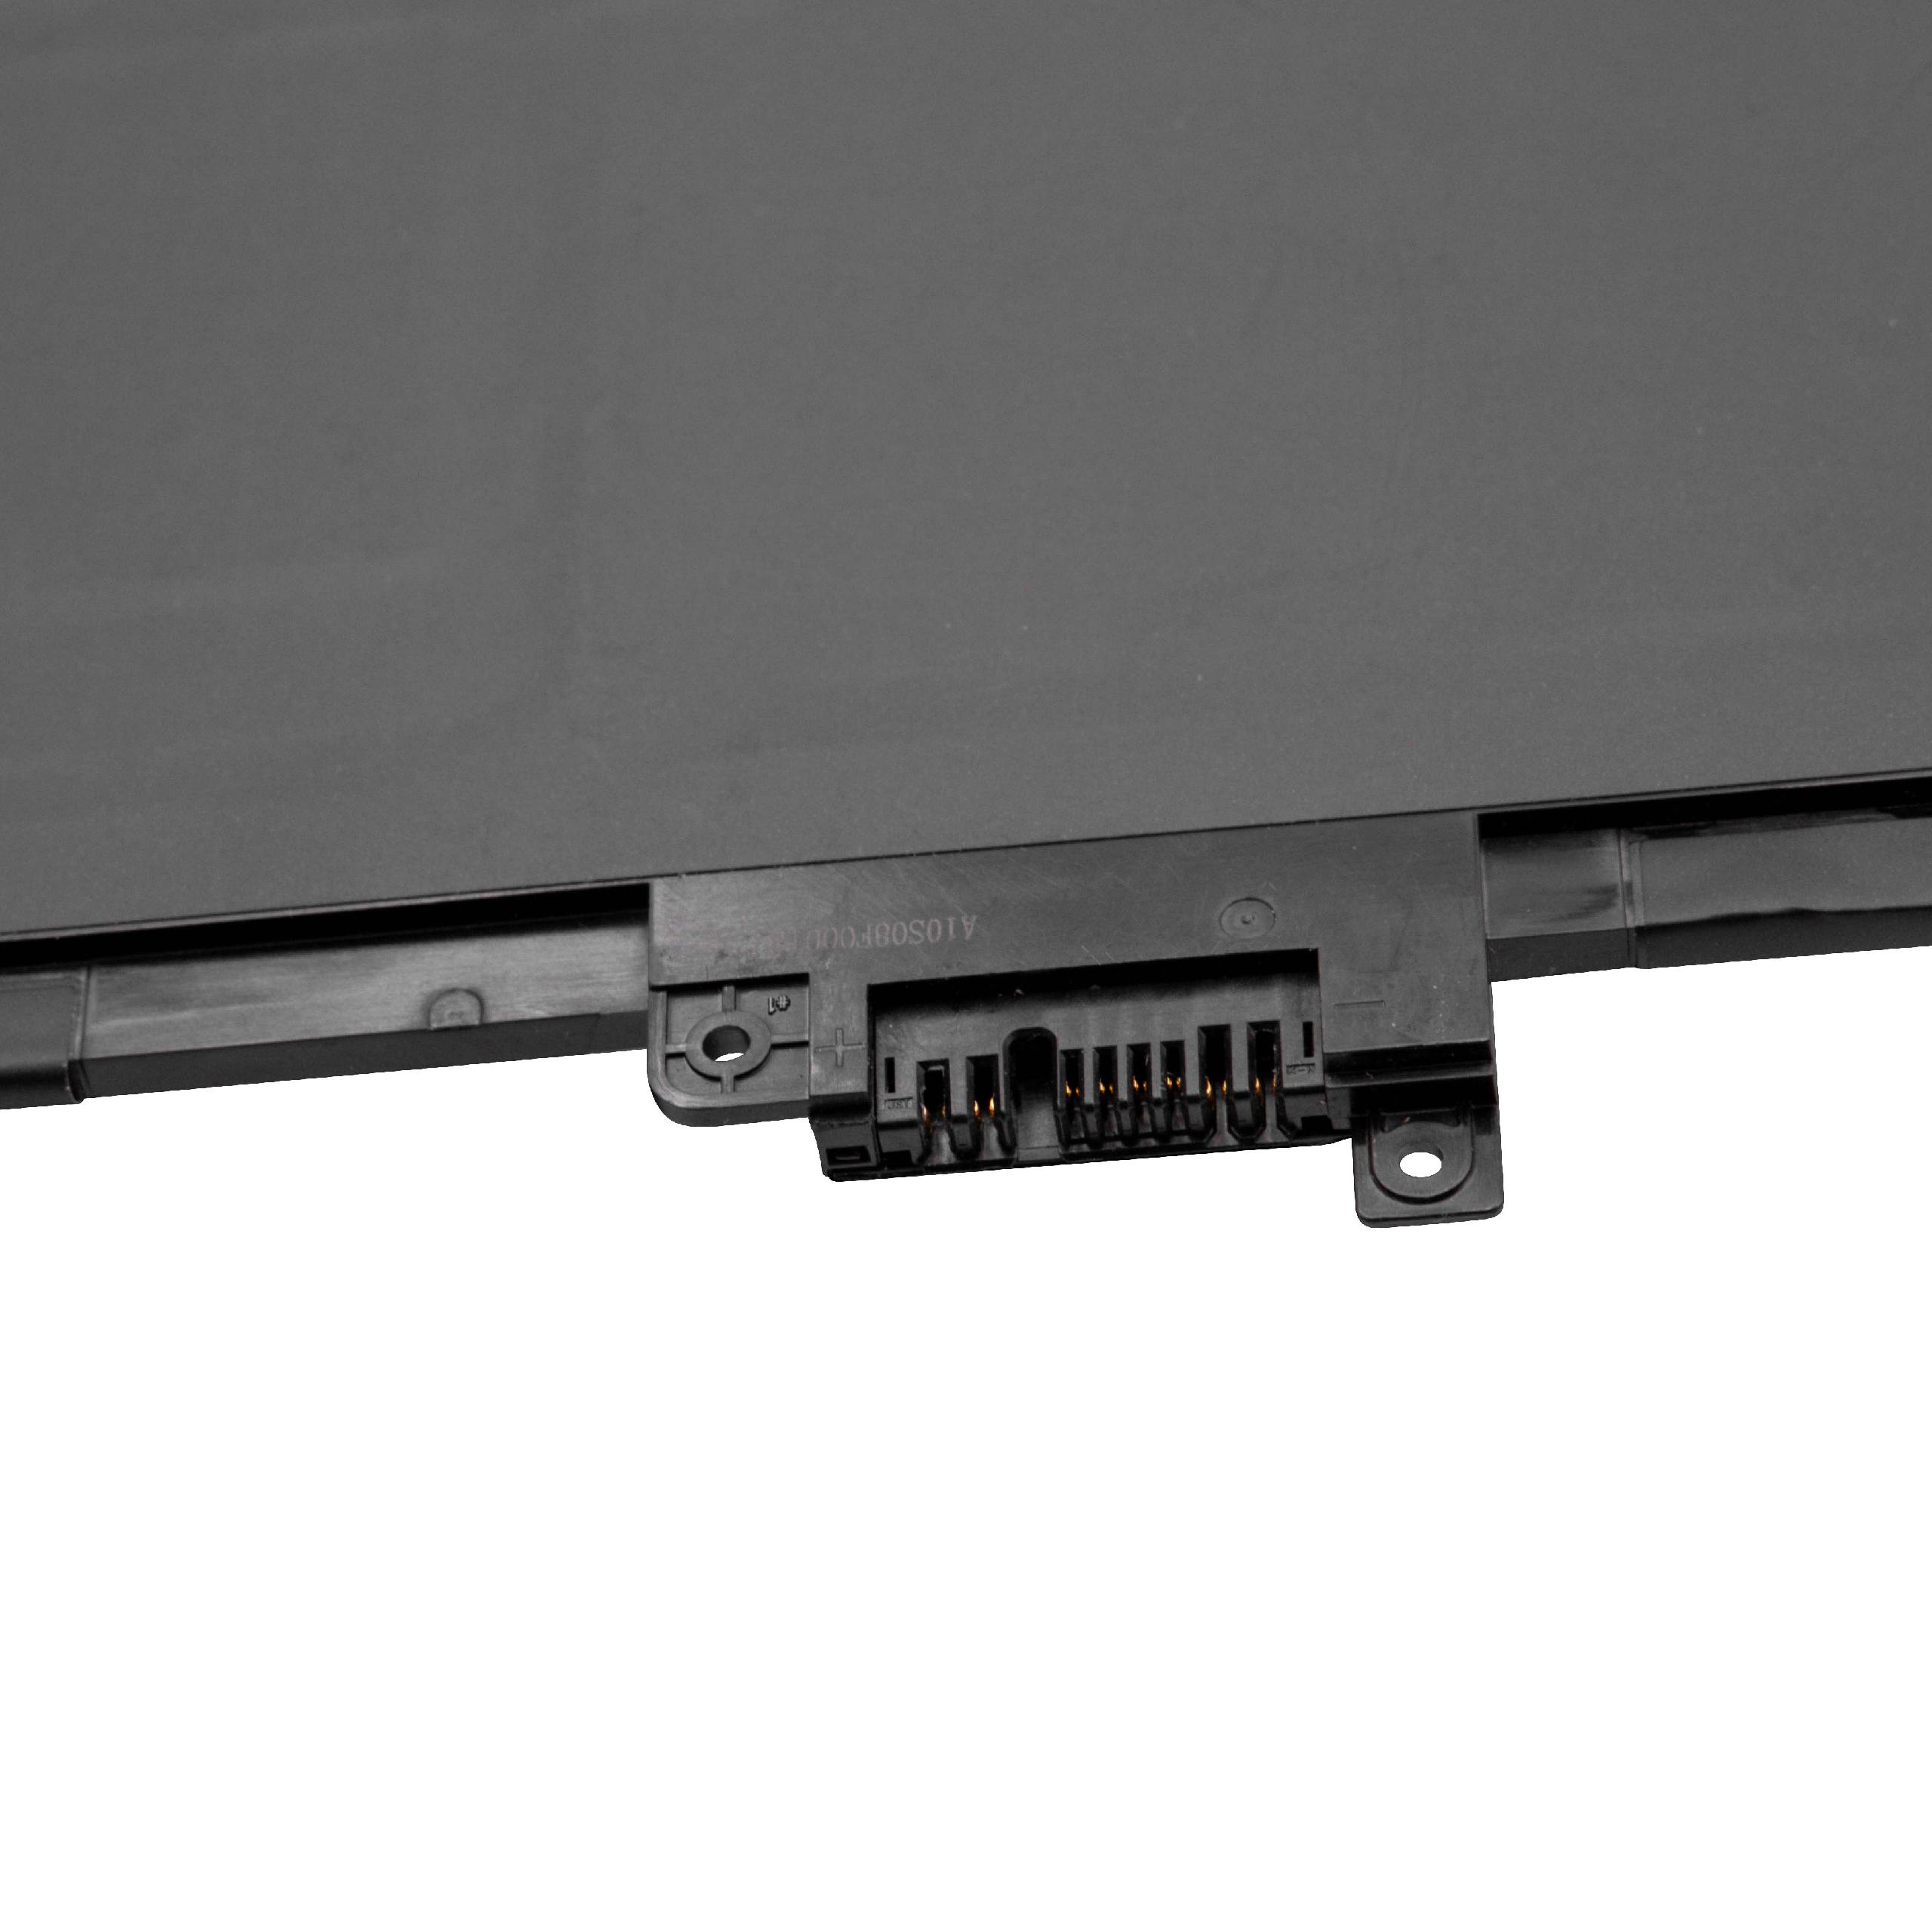 Akumulator do laptopa zamiennik Lenovo 01AV478, L17L3P71, 01AV479, 01AV480, L17M3P71 - 4600 mAh 11,58 V LiPo